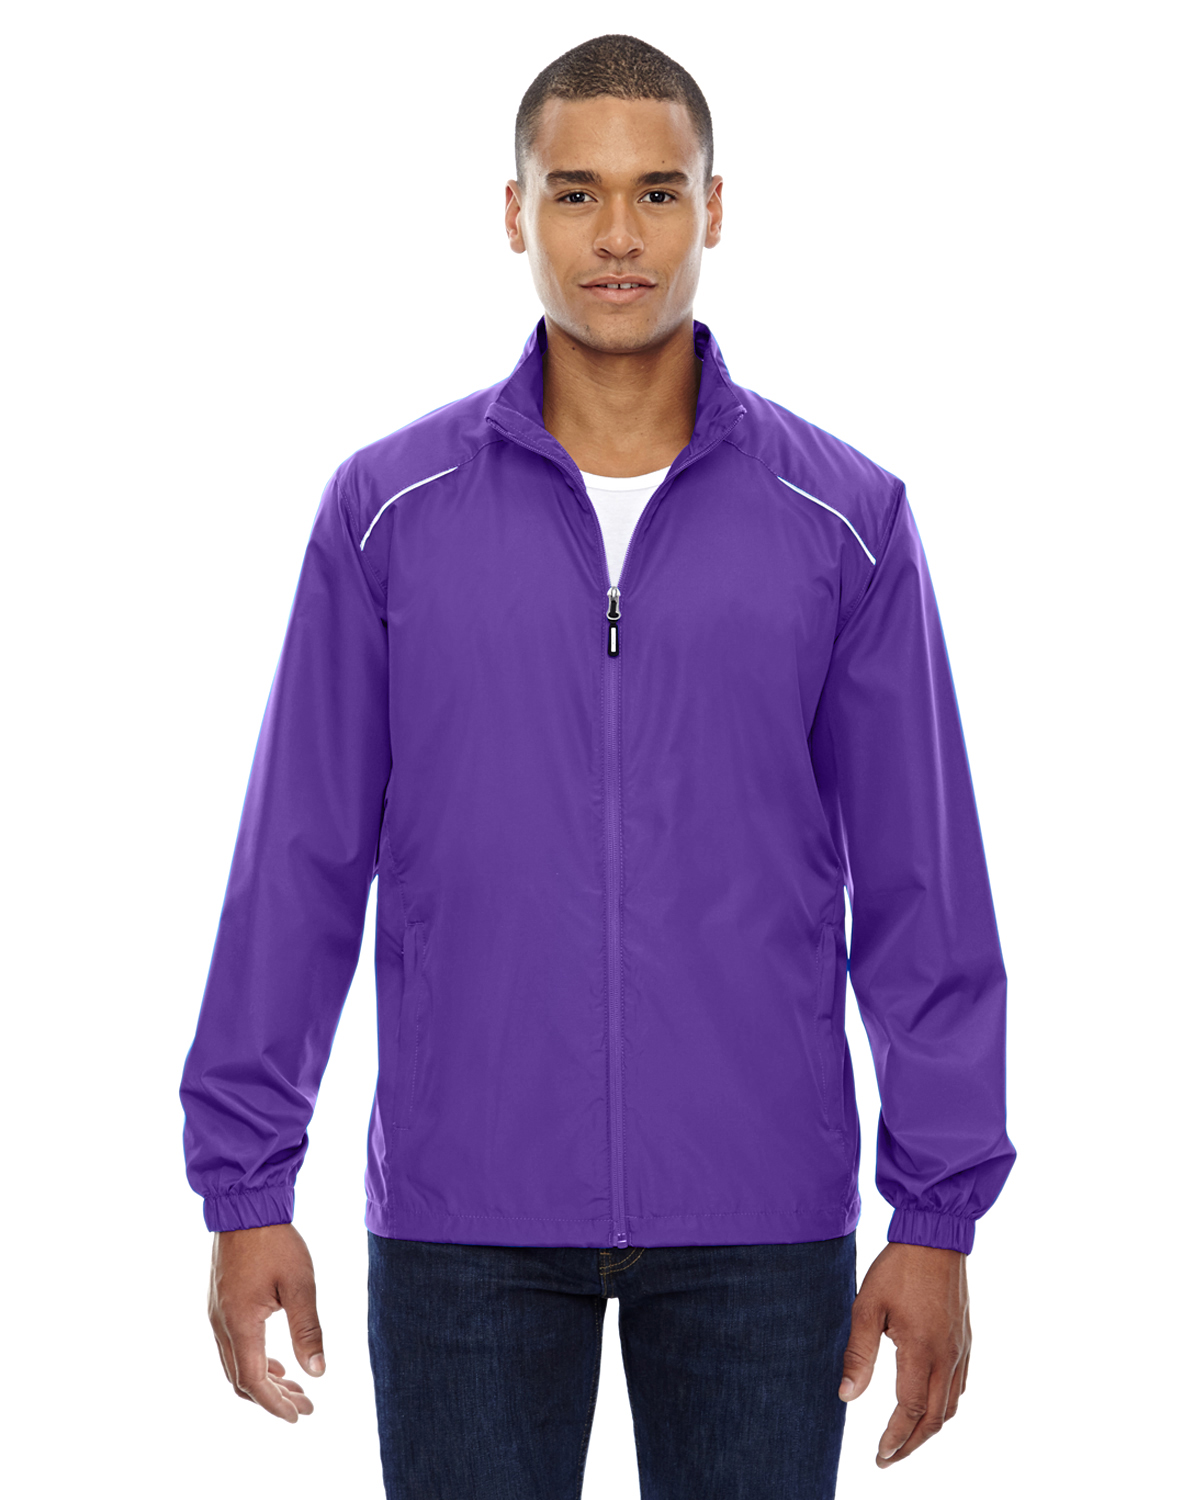 Core 365 88183 Men's Unlined Lightweight Jacket - Shirtmax